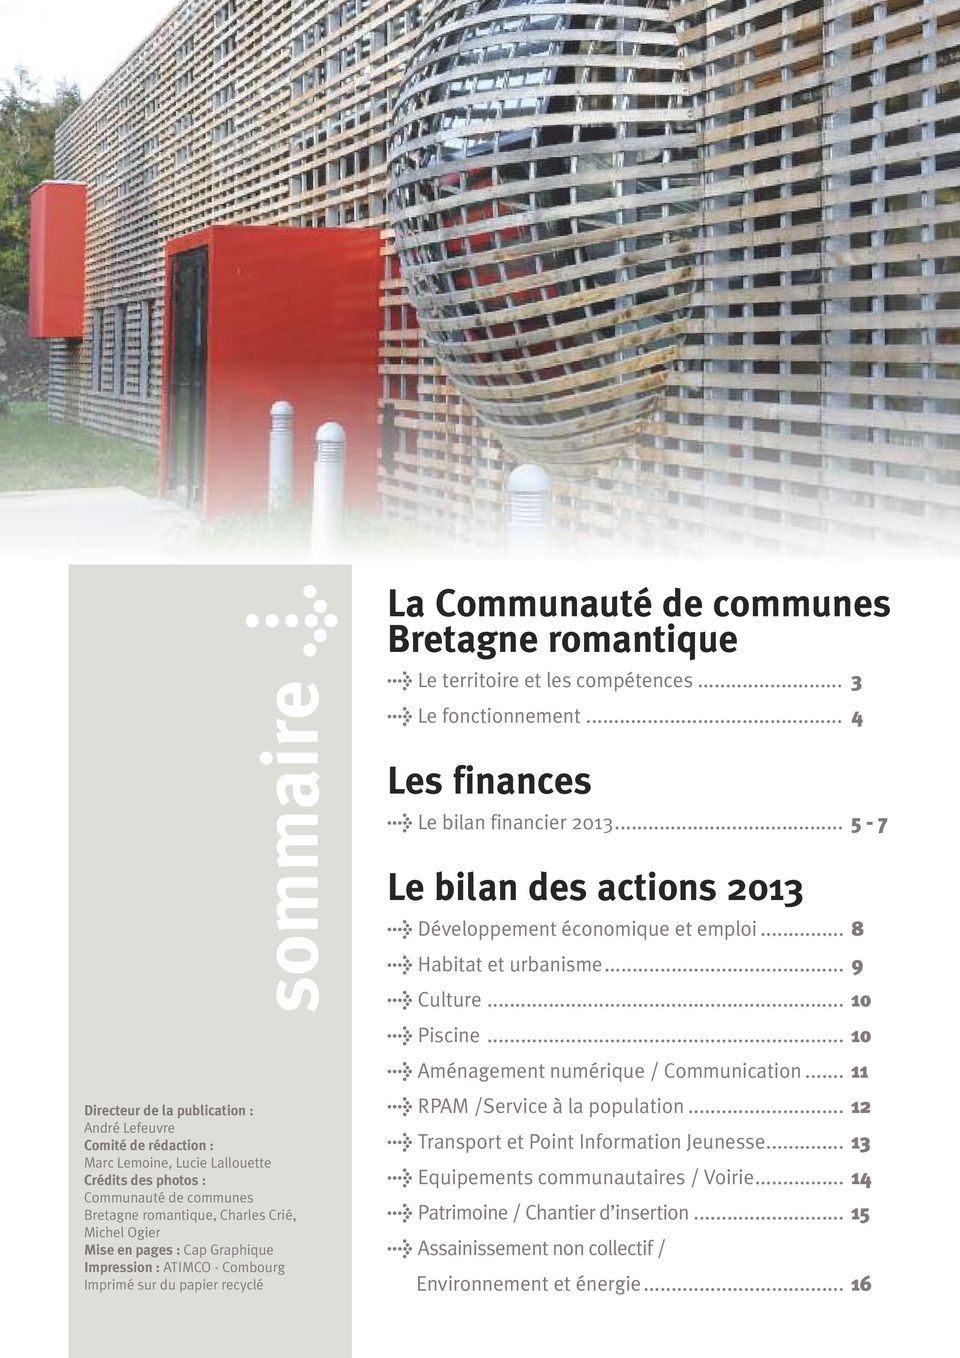 .. 3 > Le fonctionnement... 4 Les finances > Le bilan financier 2013... 5-7 Le bilan des actions 2013 > Développement économique et emploi... 8 > Habitat et urbanisme... 9 > Culture... 10 > Piscine.